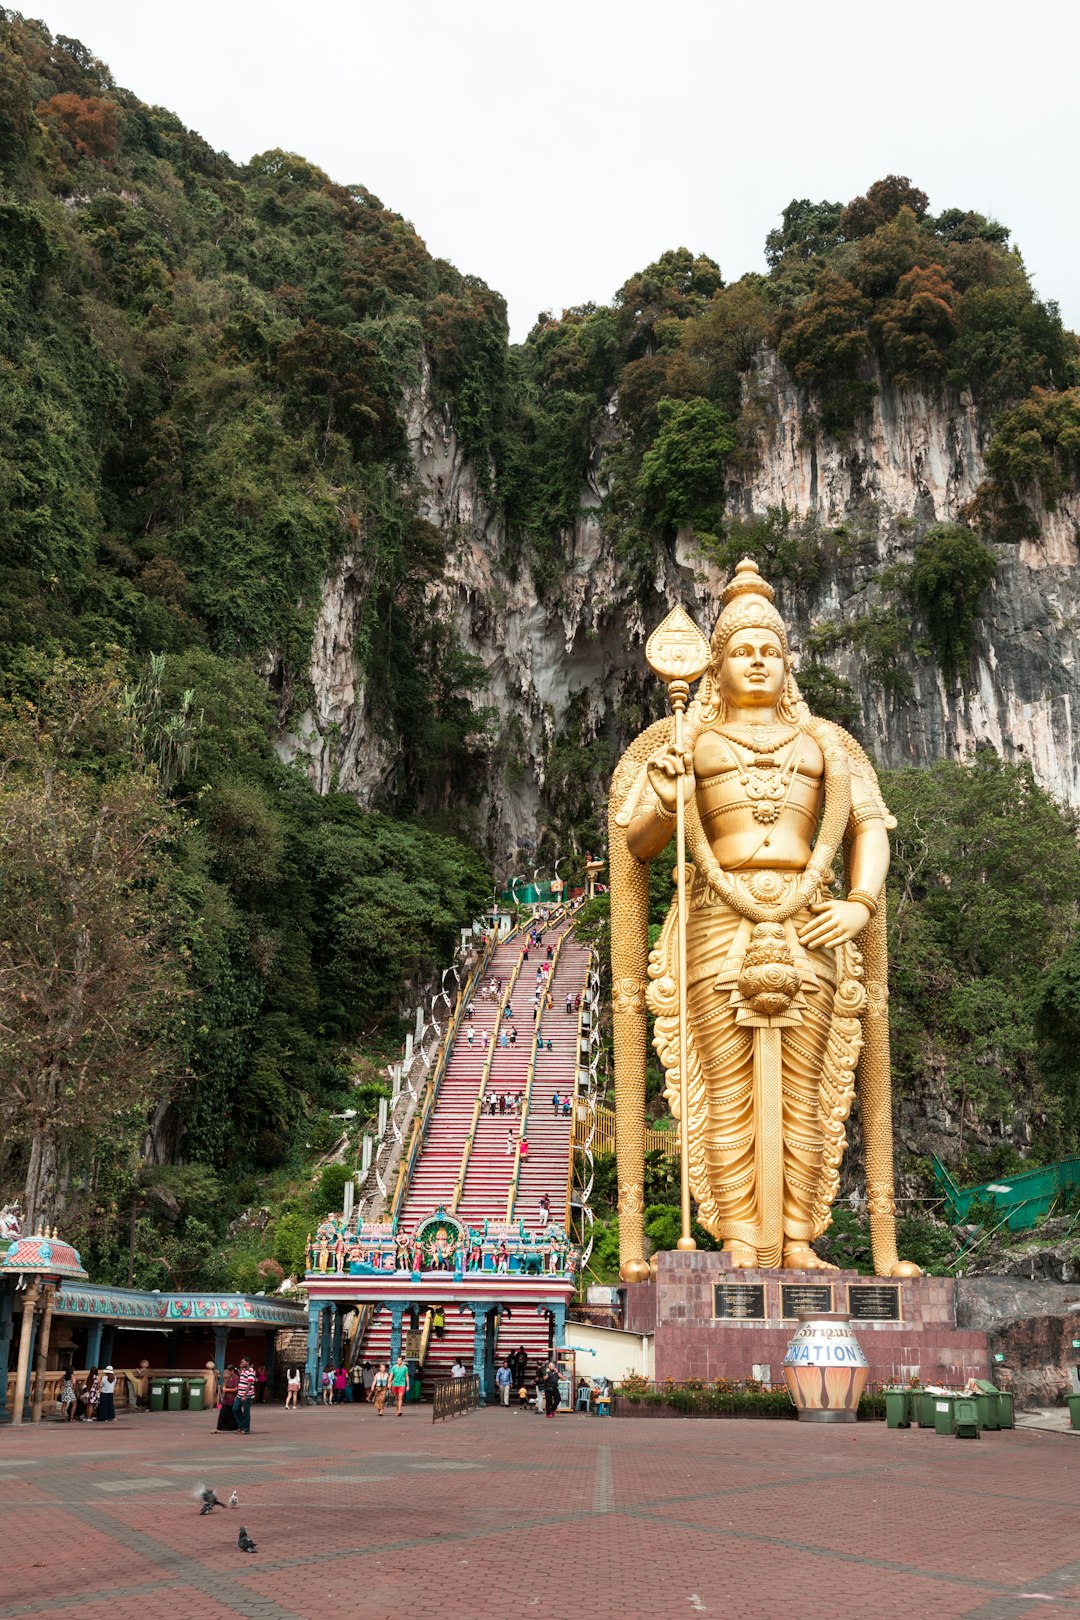 Hindu temple photo spot Kuala Lumpur Batu Caves